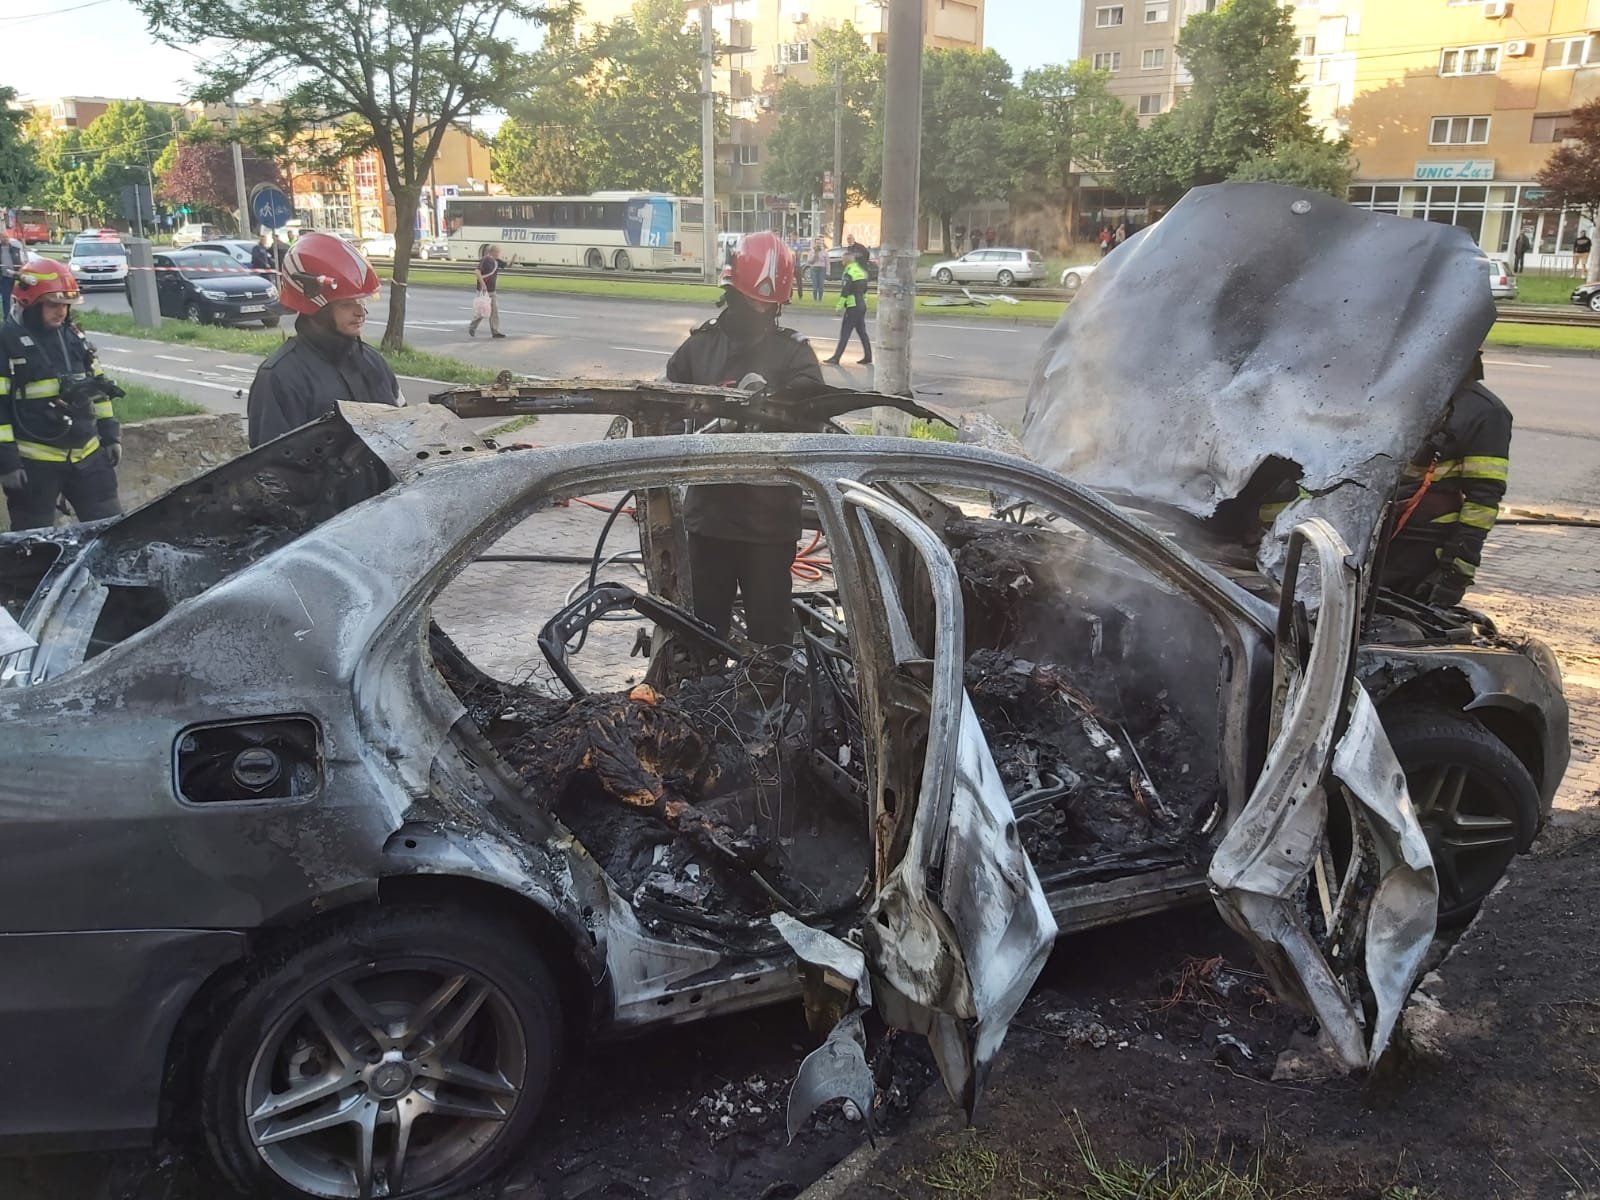  FOTO: Mașină în flăcări în parcarea unui supermarket. În interior, un afacerist mort